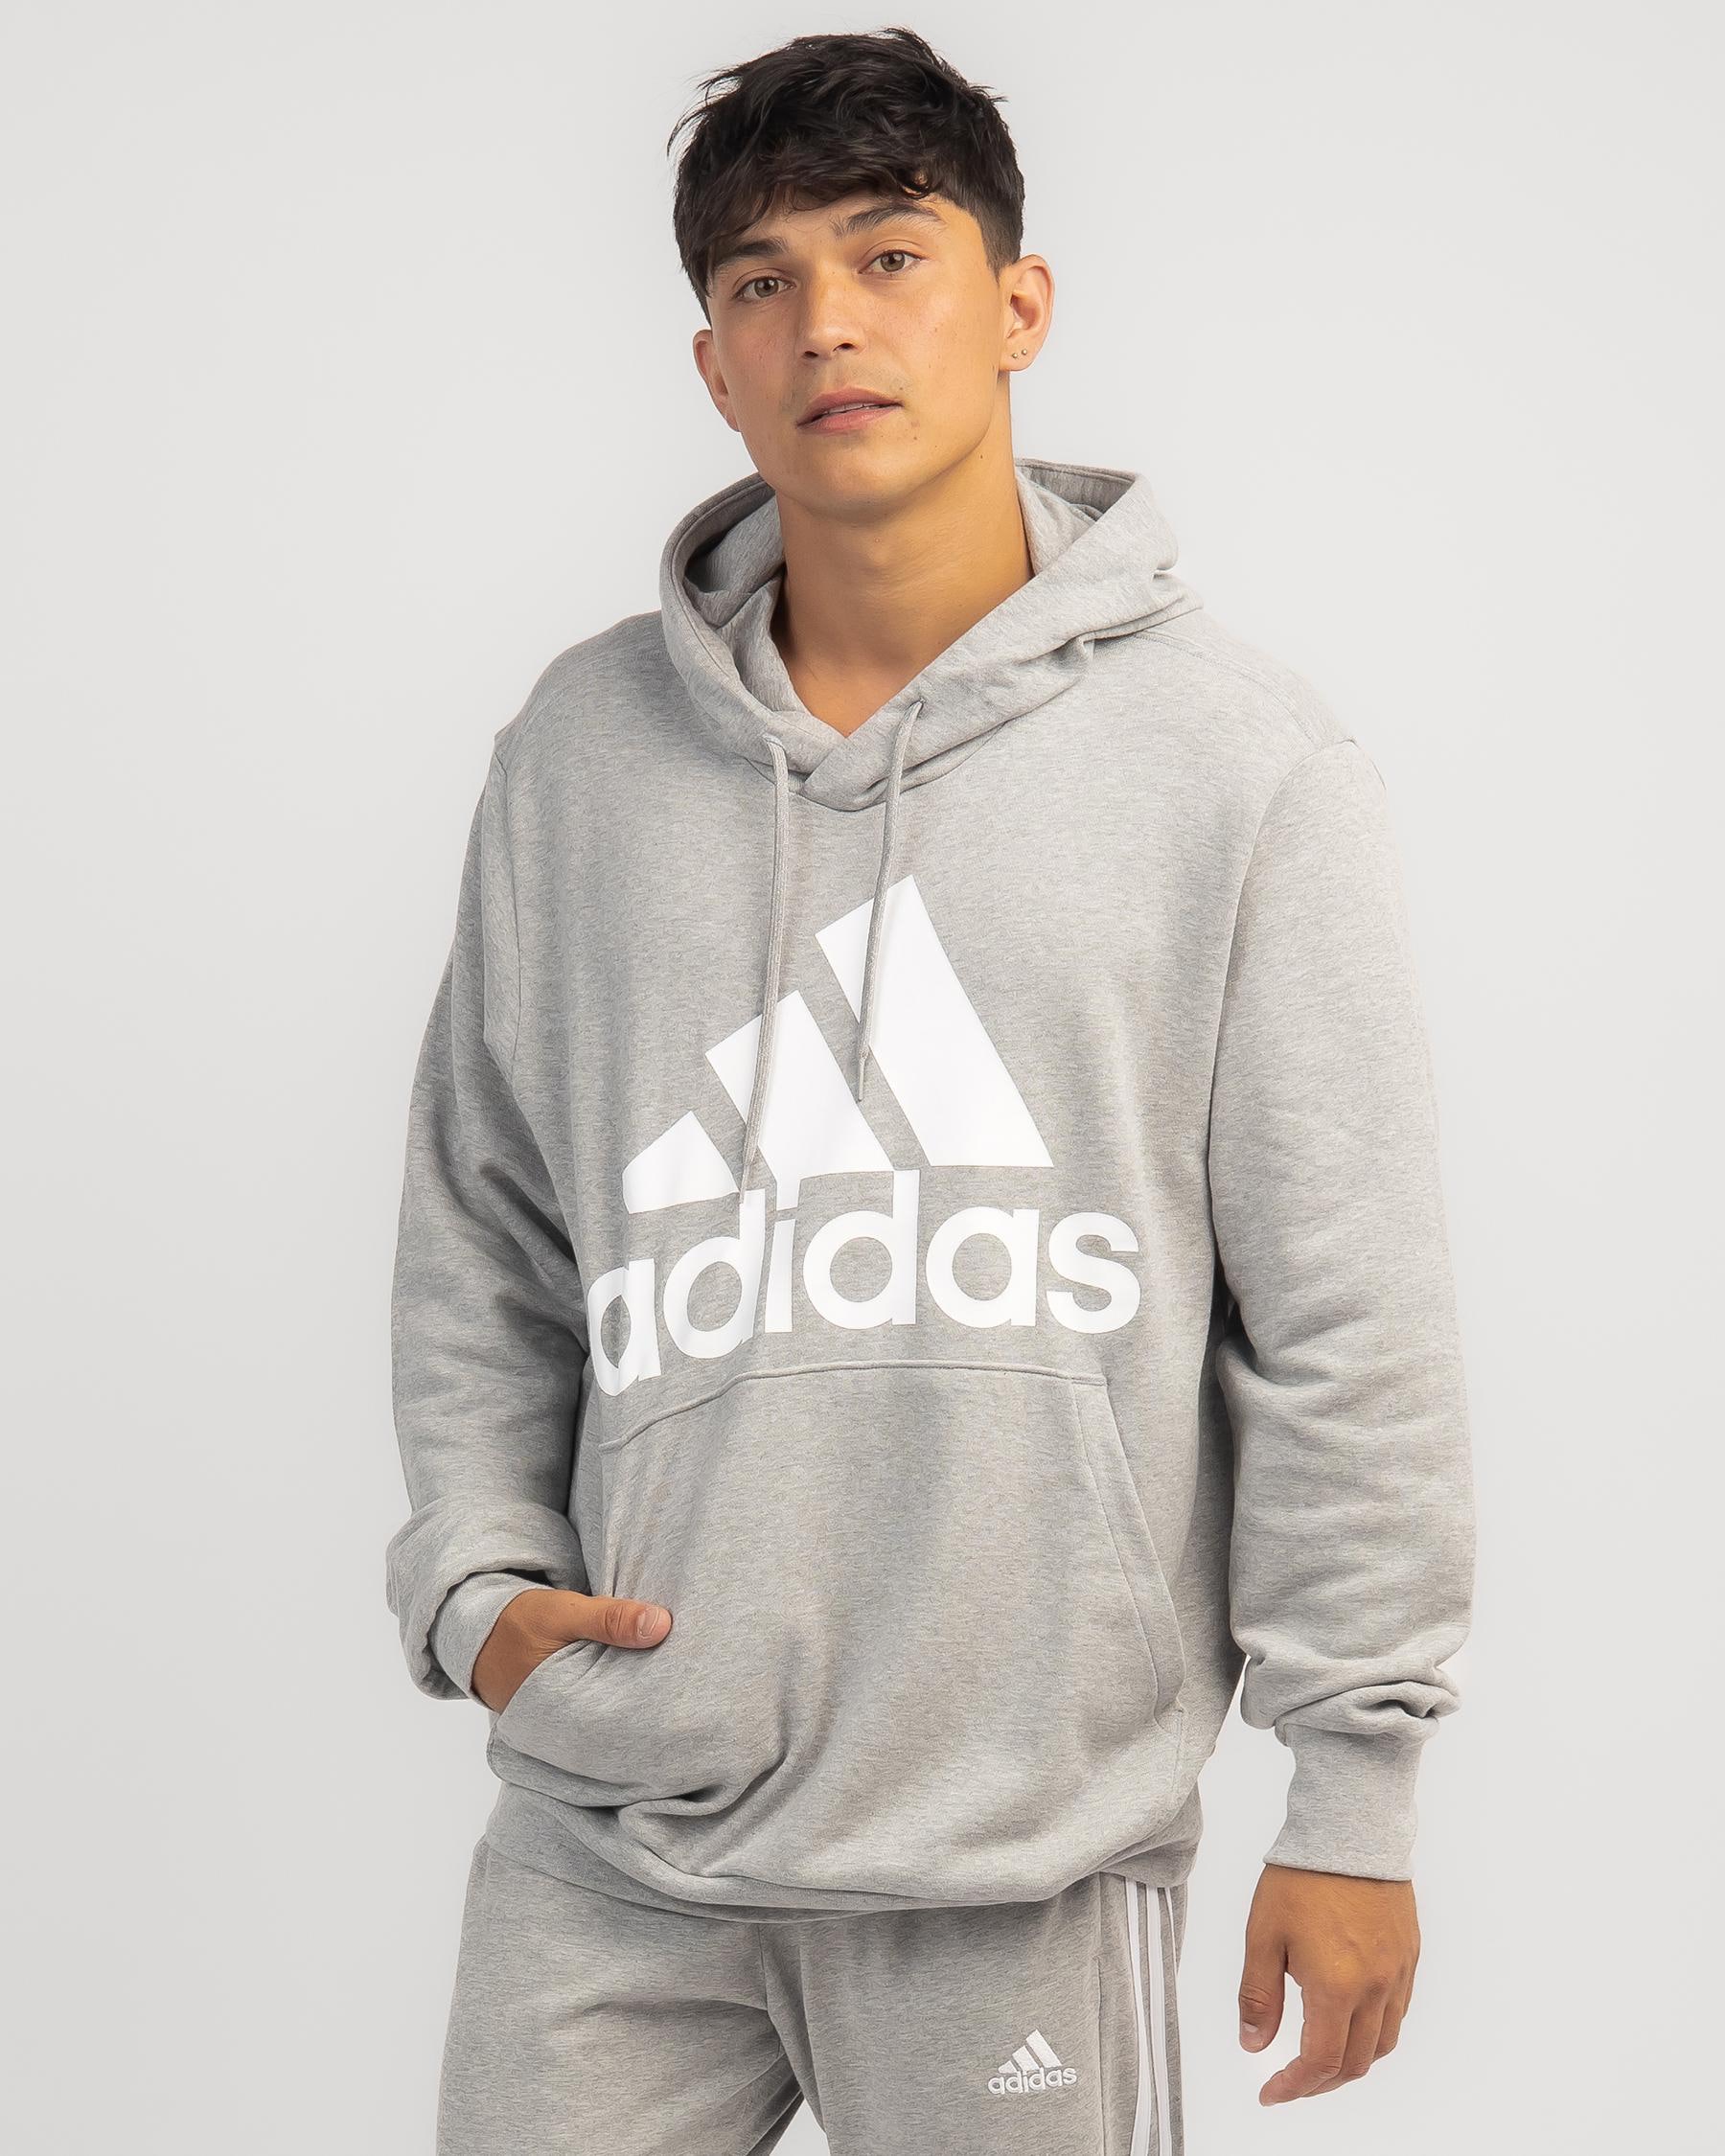 Adidas Big Logo Hoodie In Medium Grey Heather - Fast Shipping & Easy ...